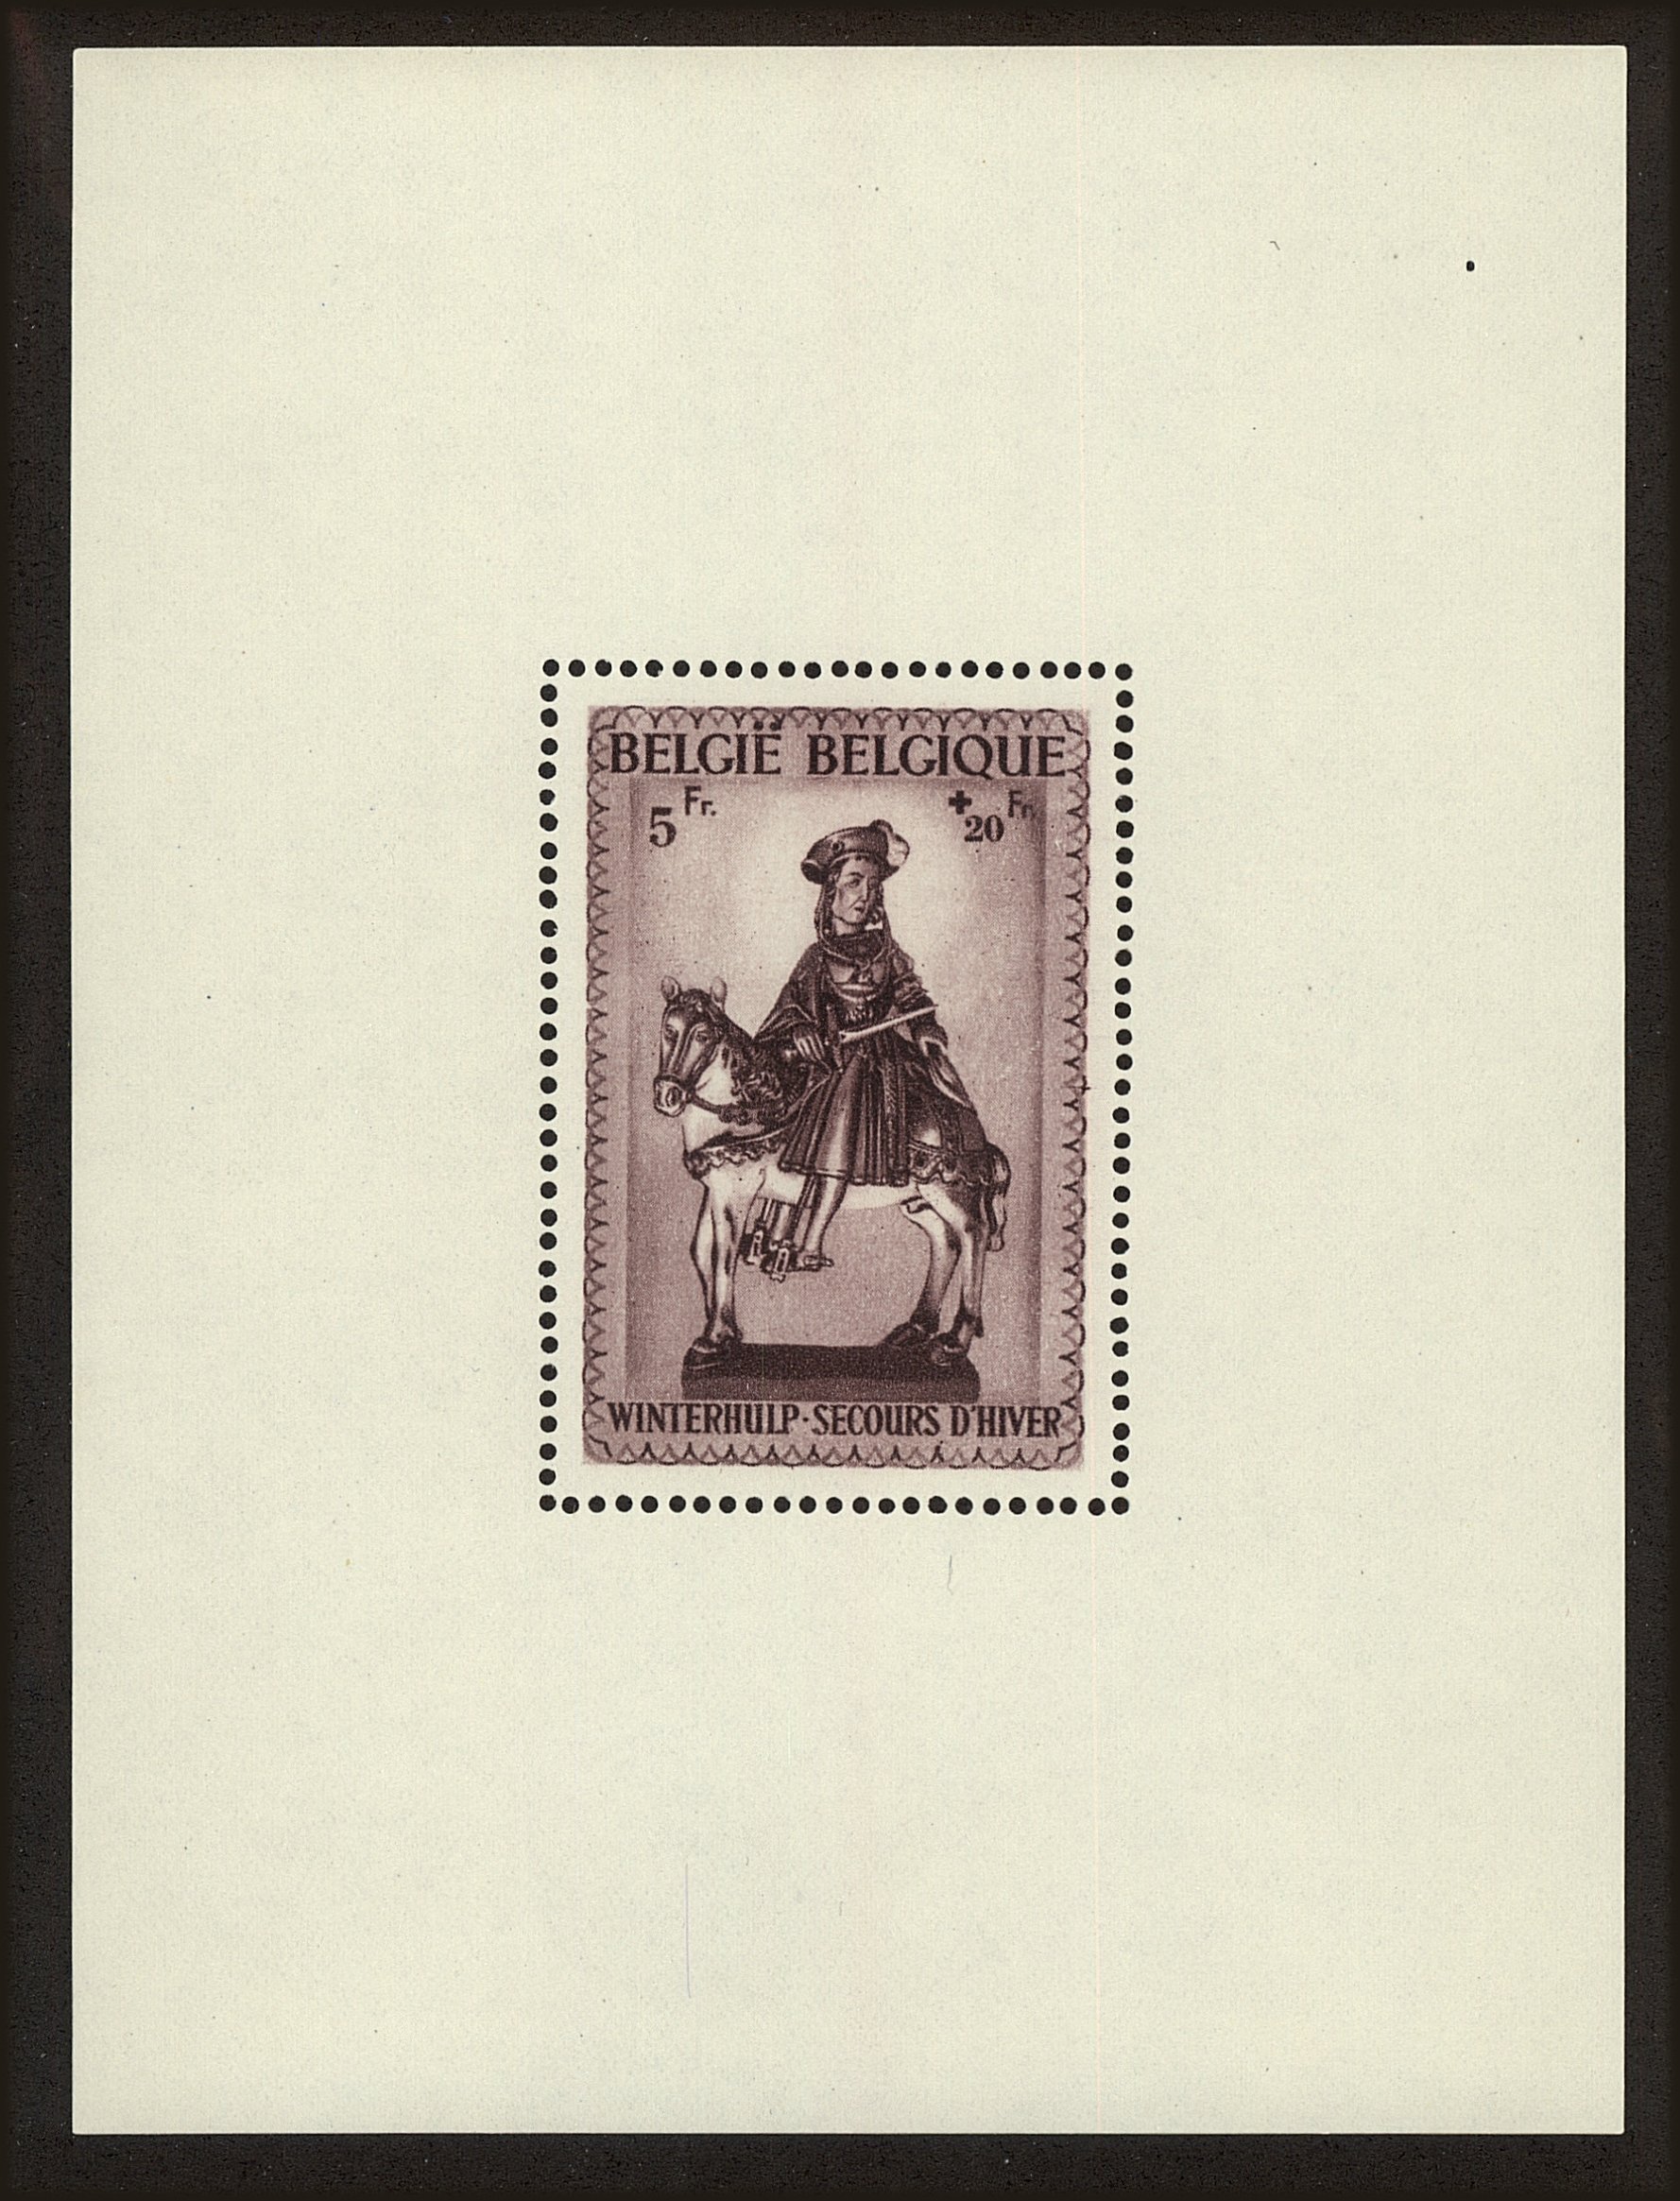 Front view of Belgium B315 collectors stamp